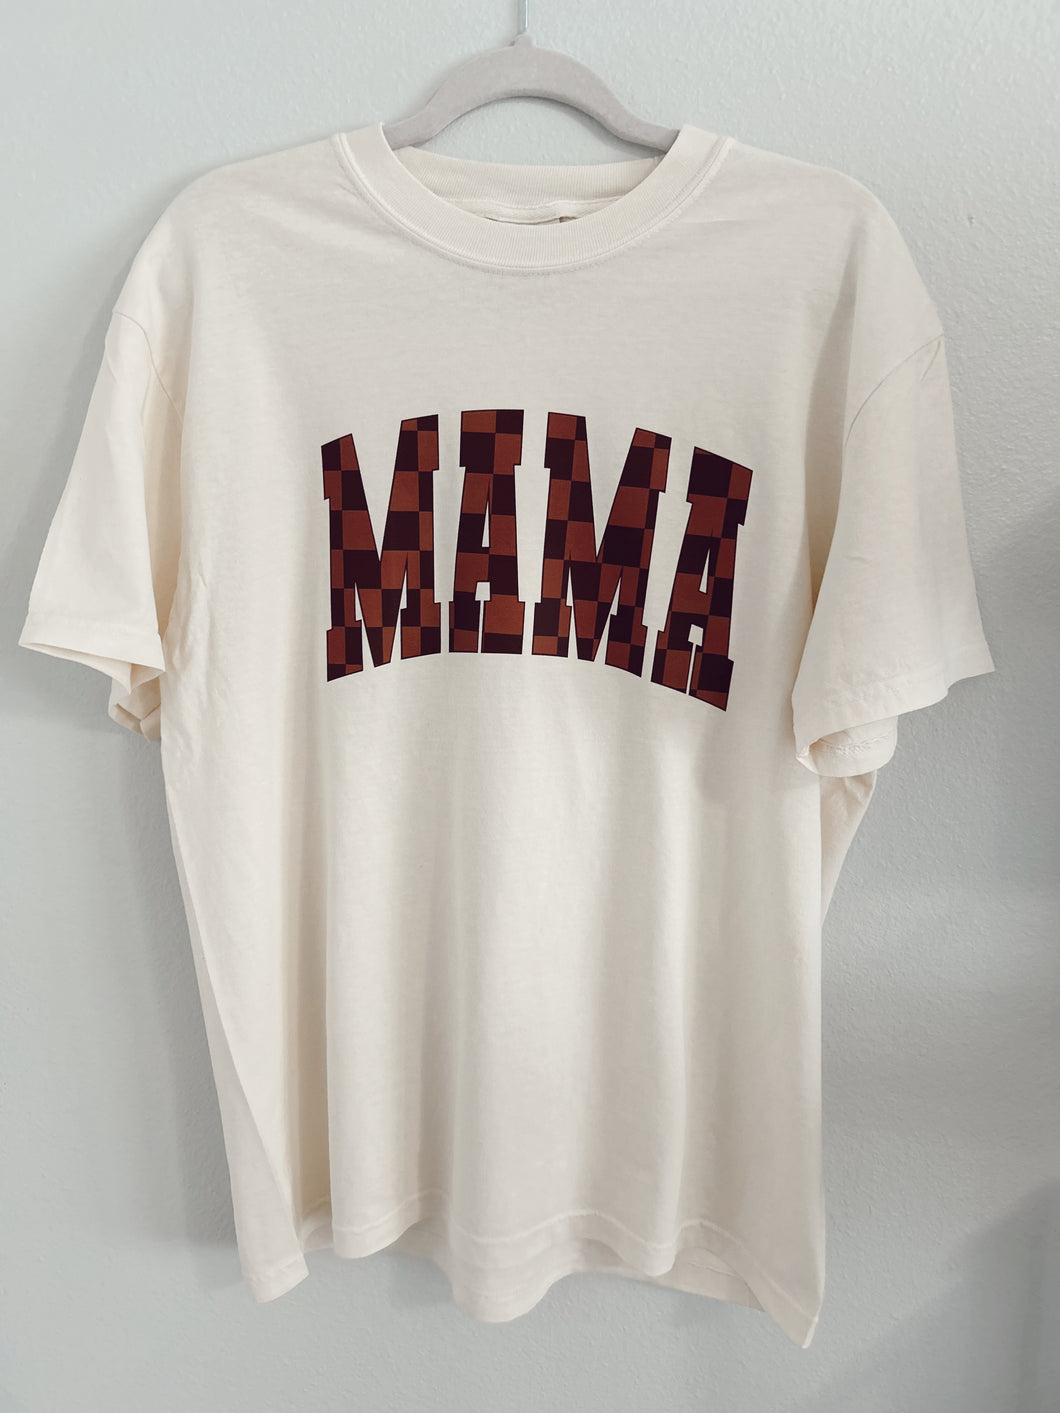 MAMA Checkered T-shirt